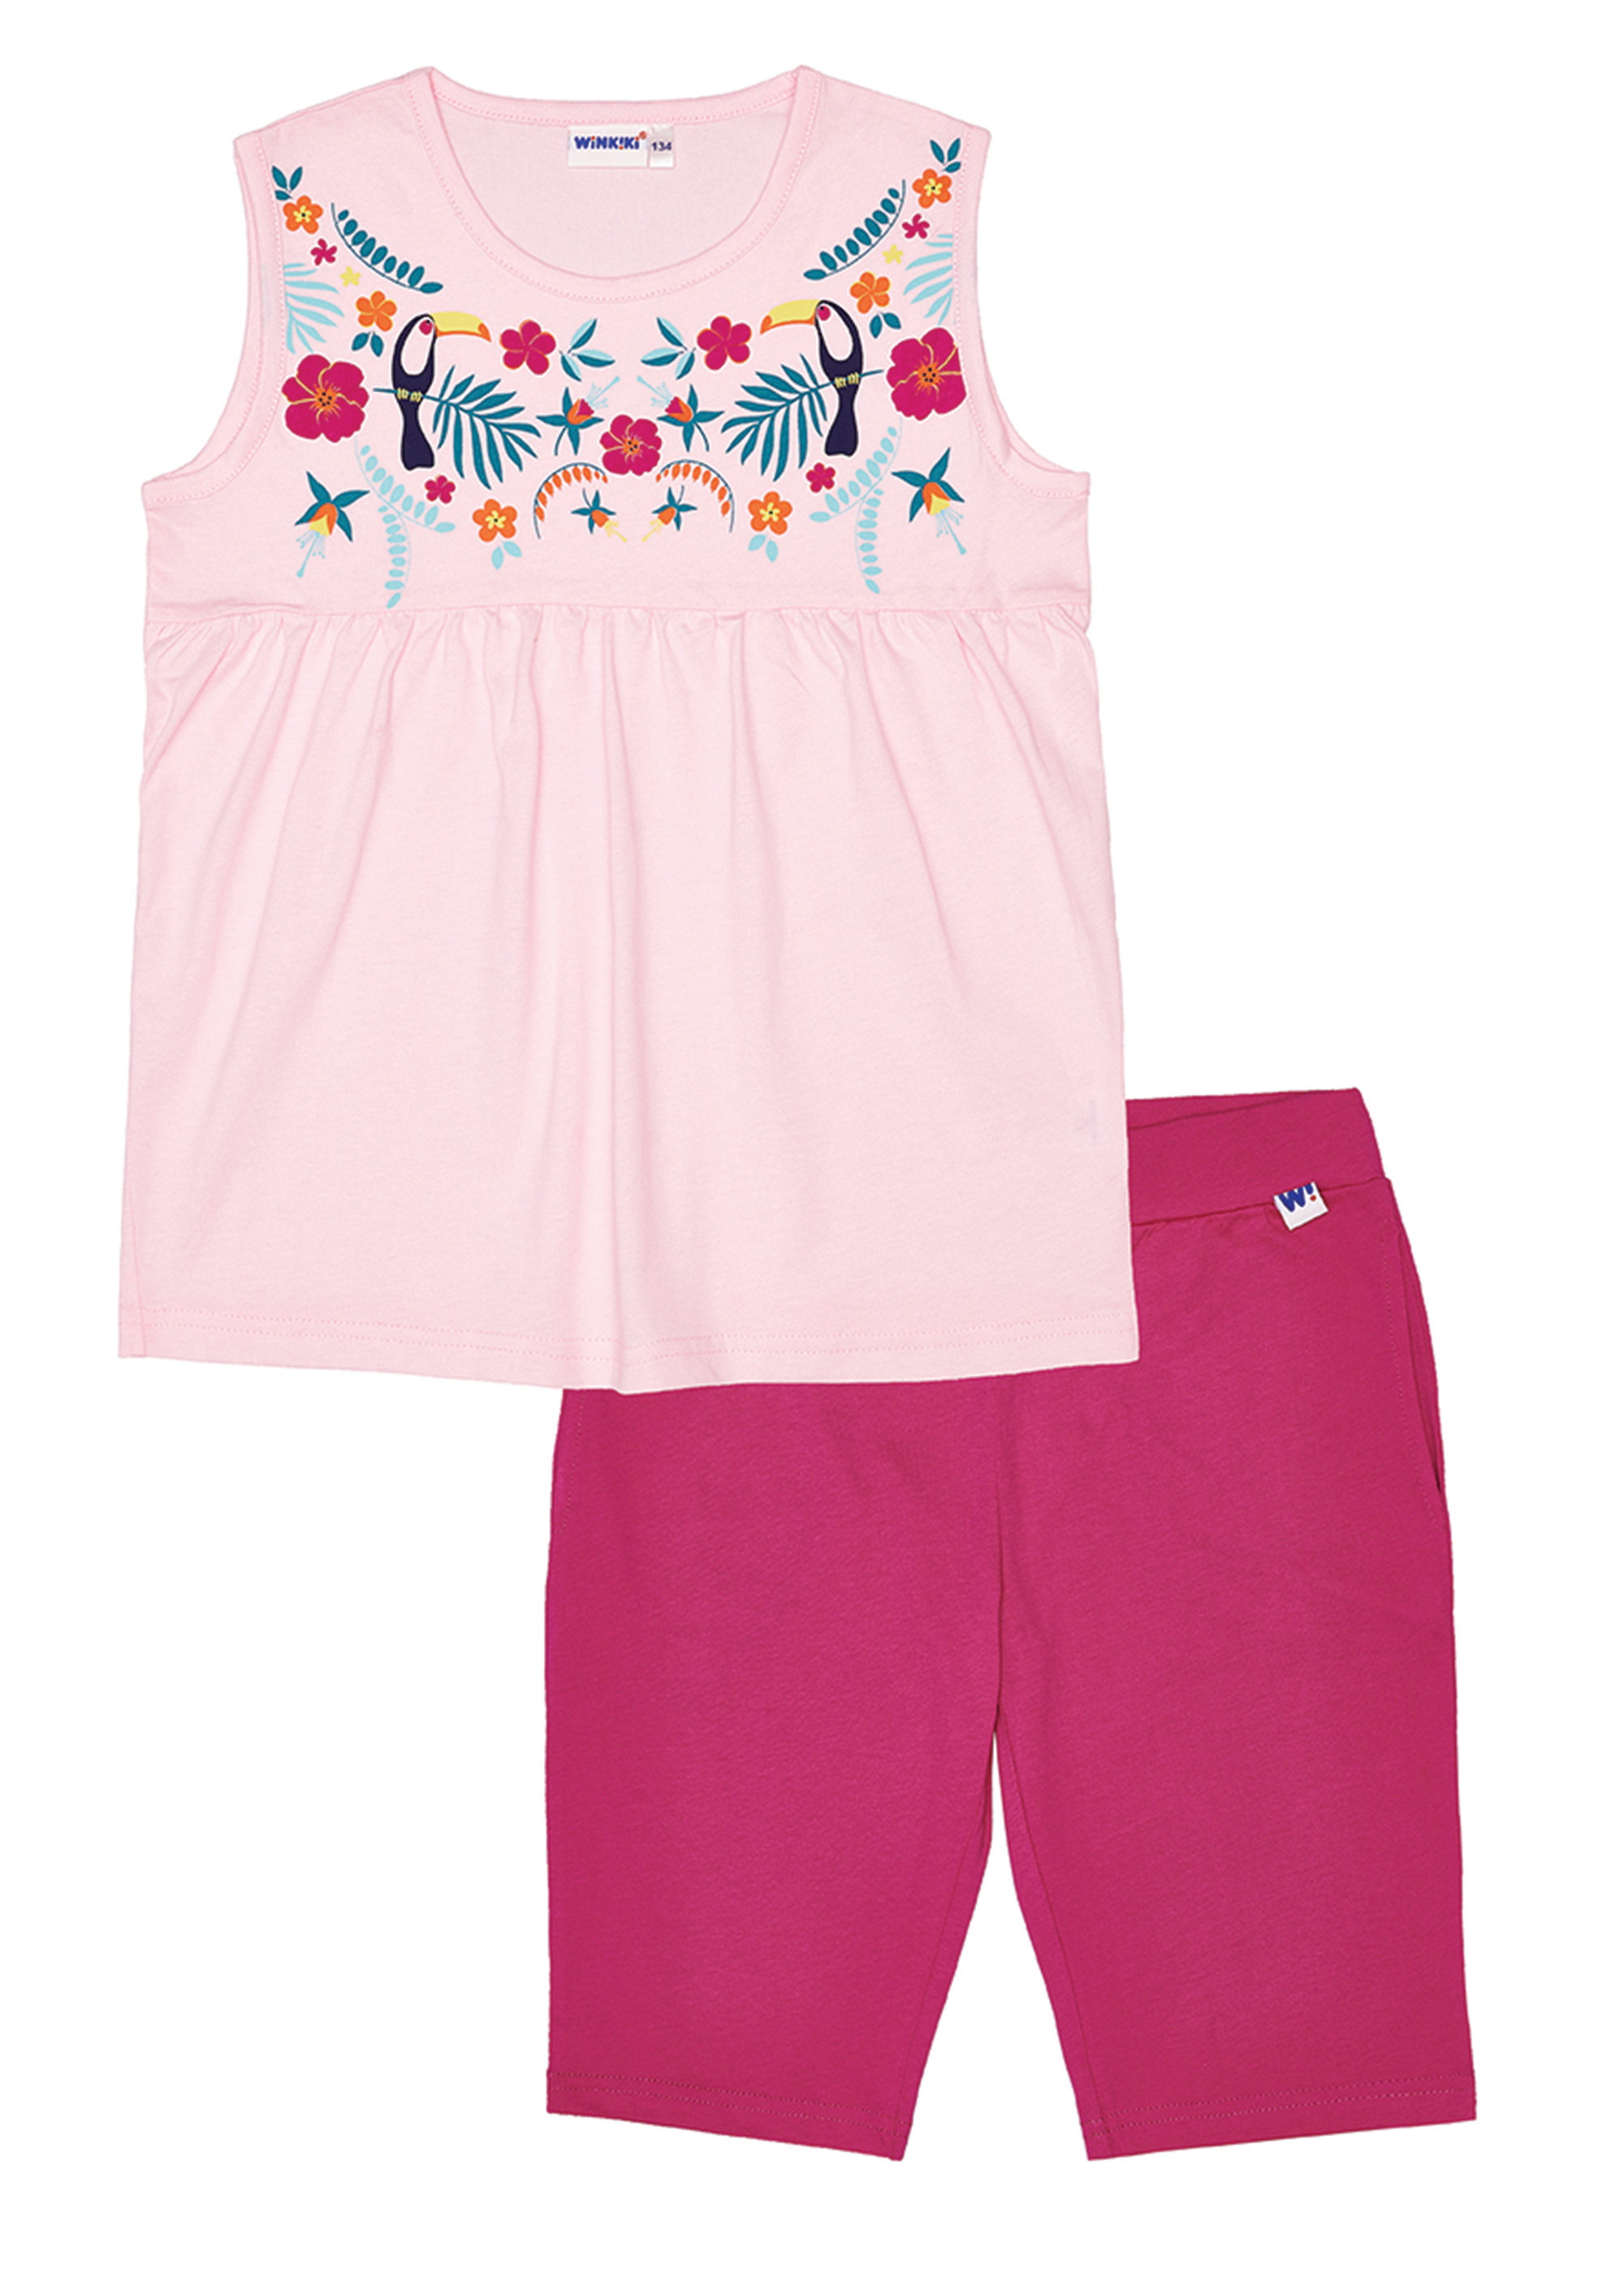 Dívčí pyžamo - Winkiki WJG 91170, růžová Barva: Růžová, Velikost: 134